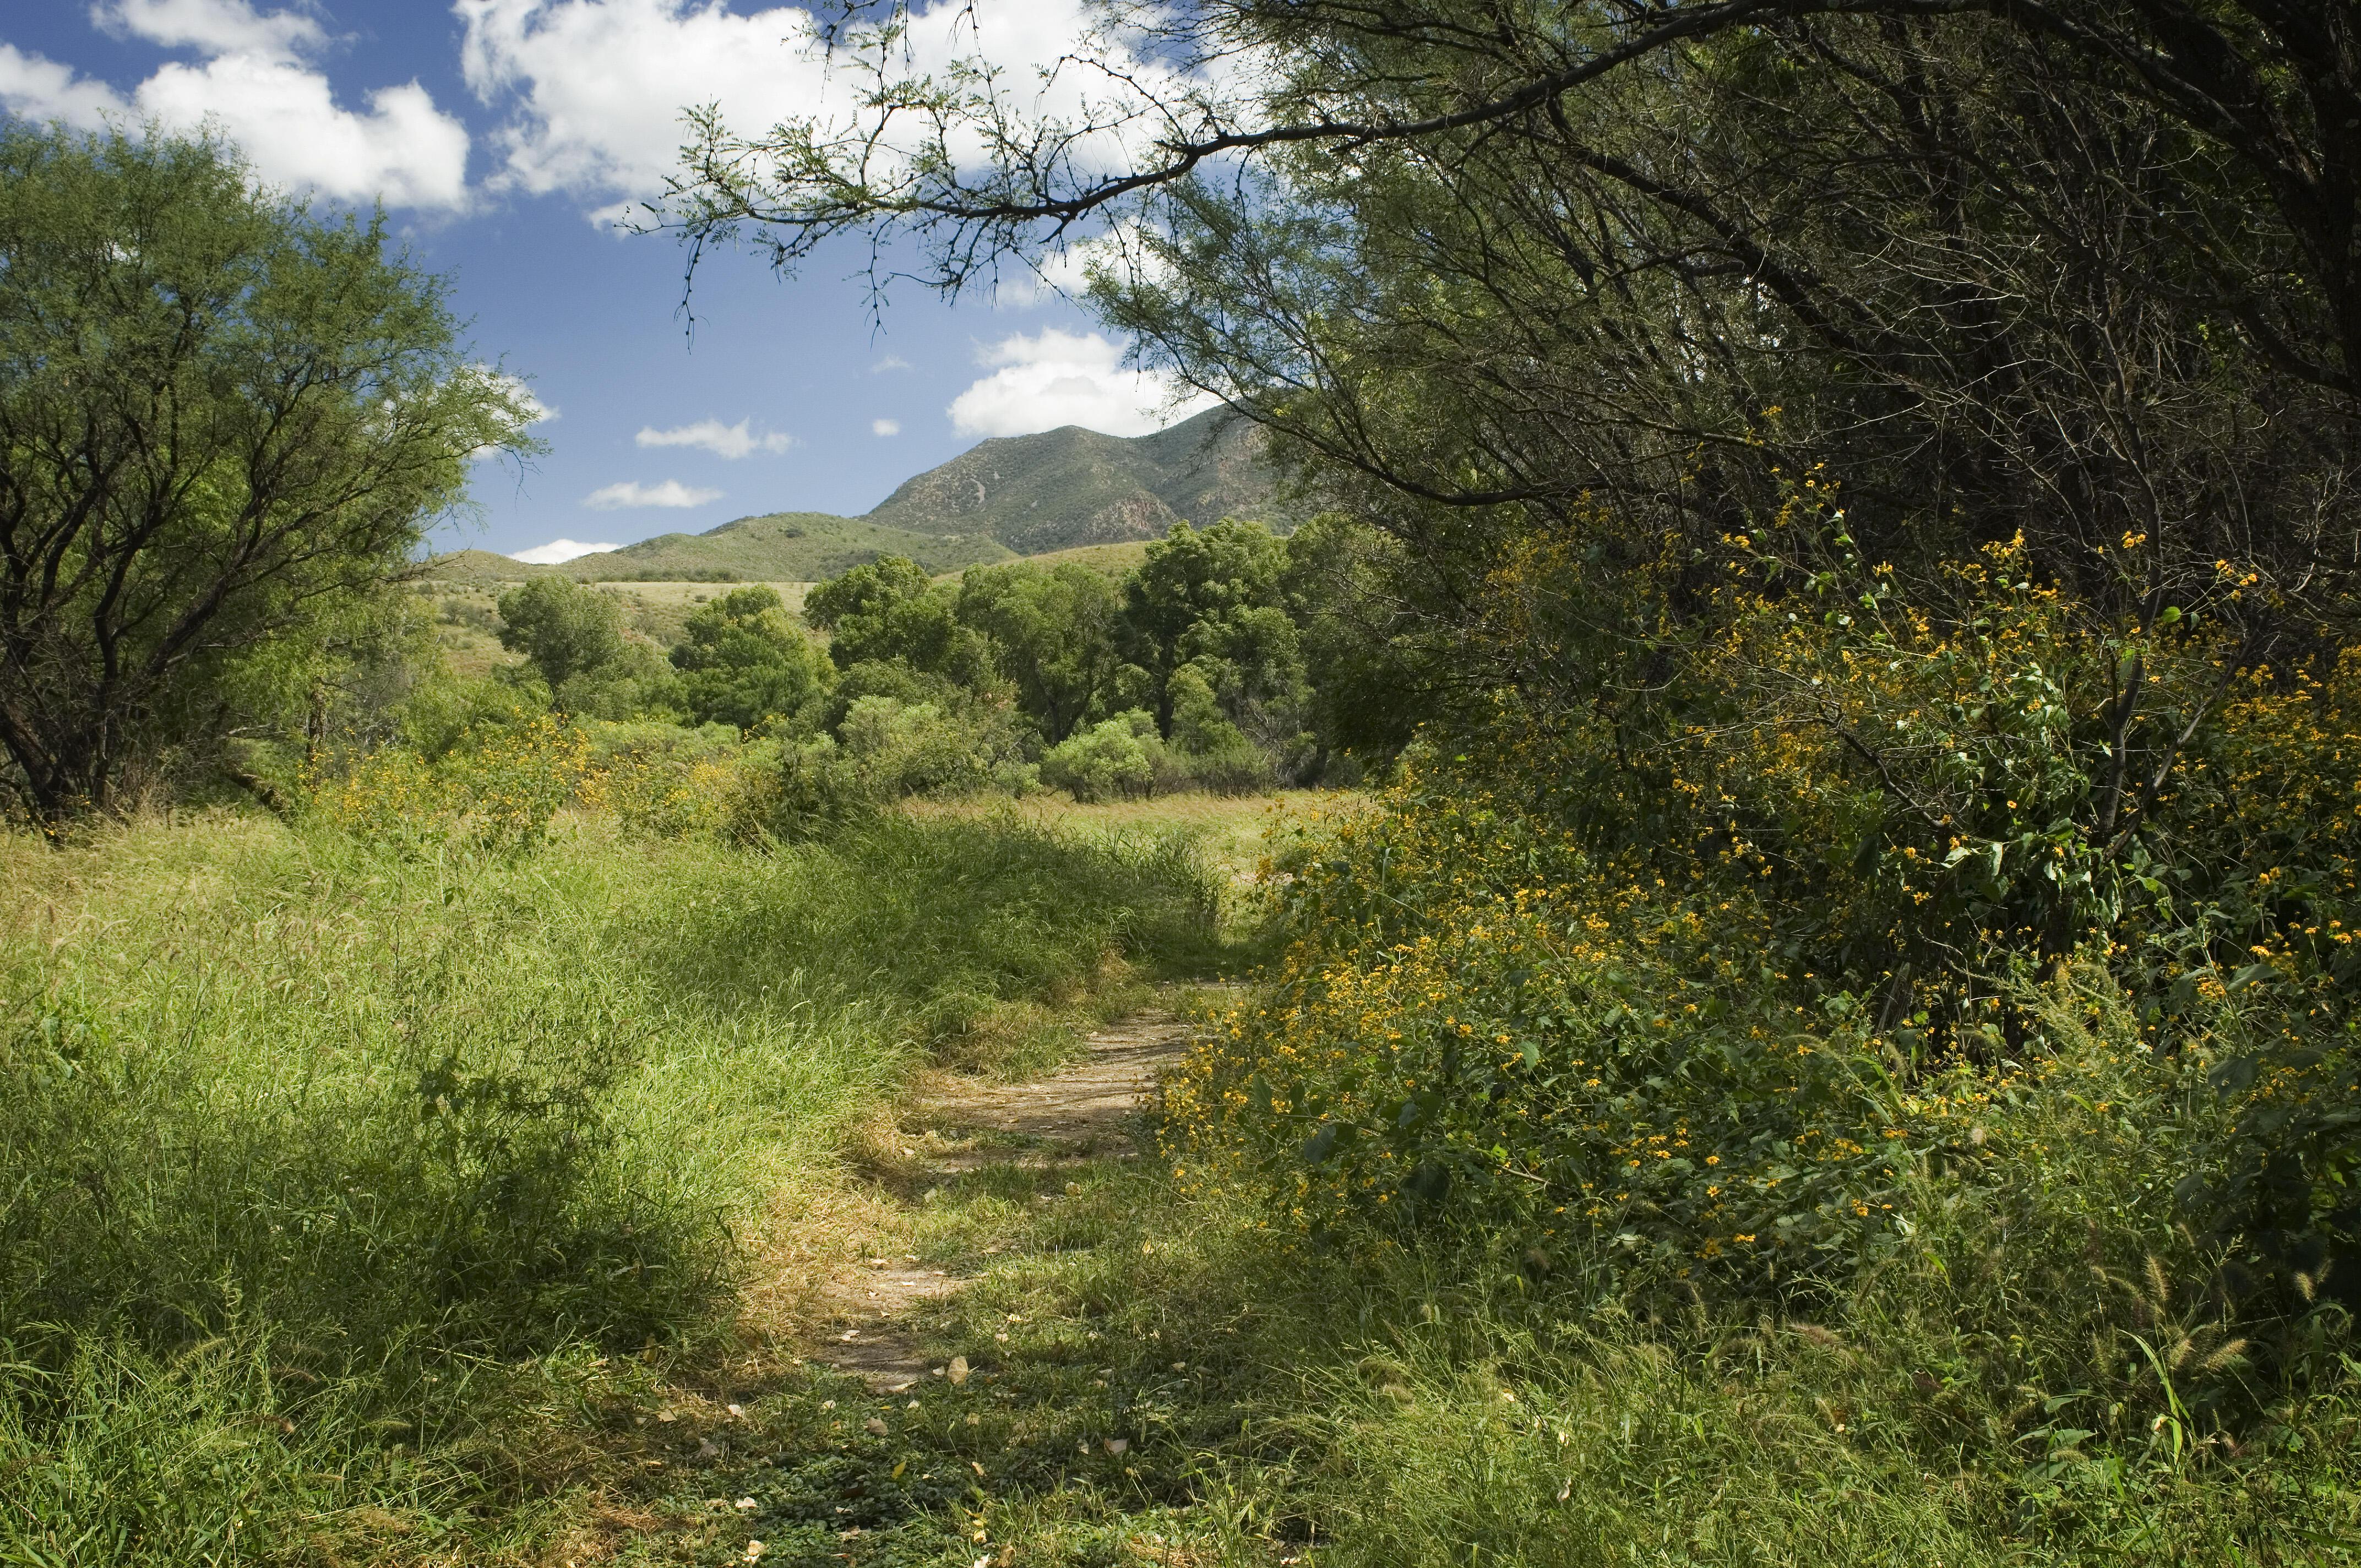 A trail through a lush riparian landscape.